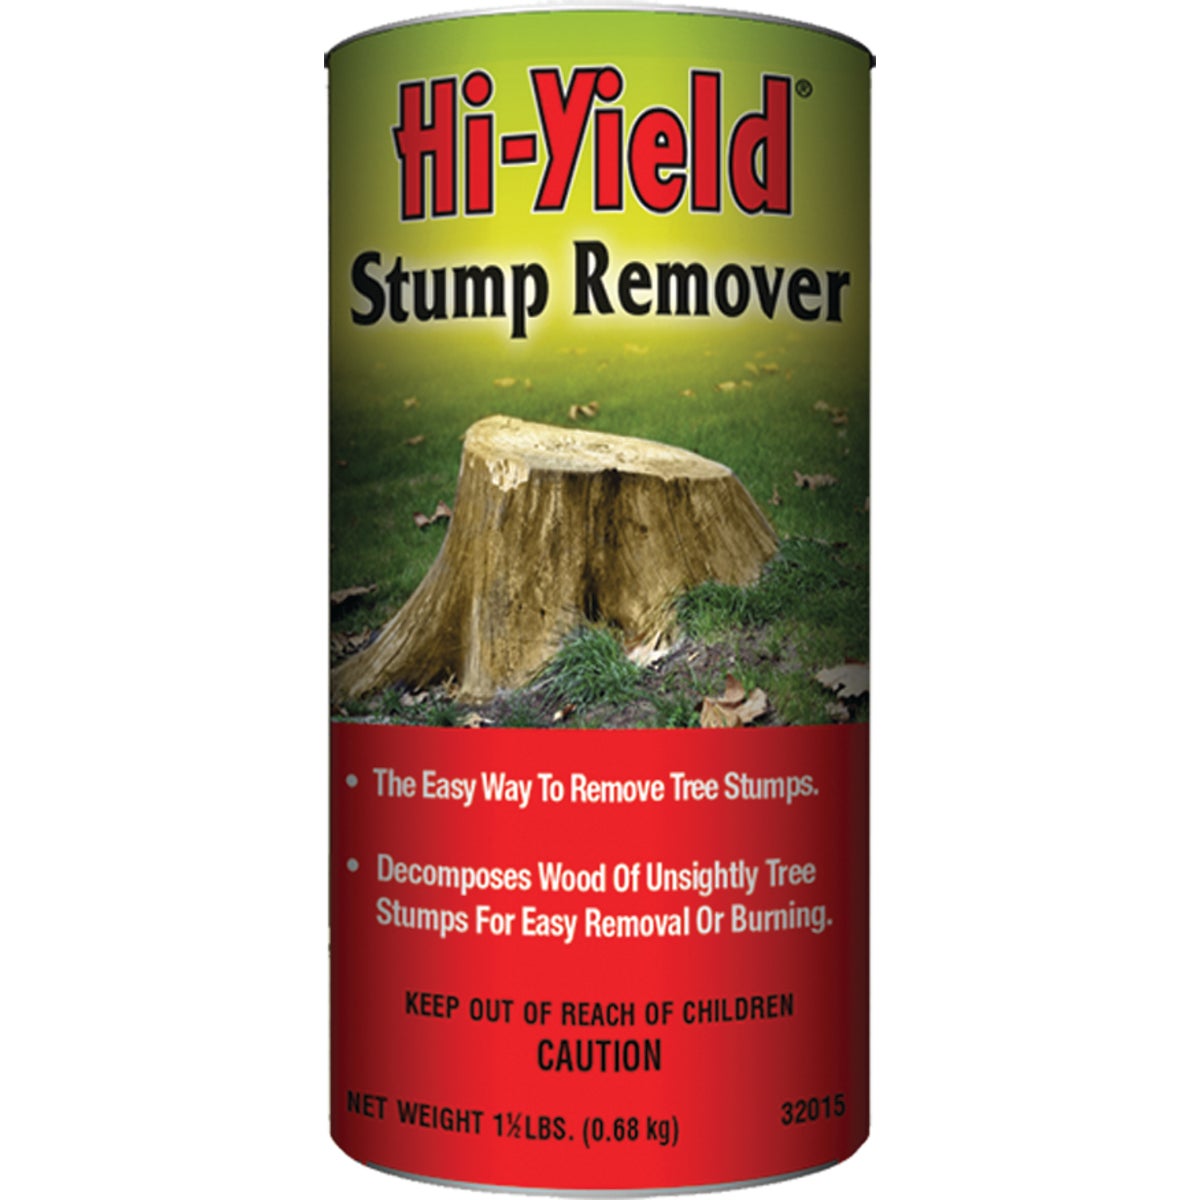 Hi-Yield 1-1/2 Lb. Granular Stump Remover